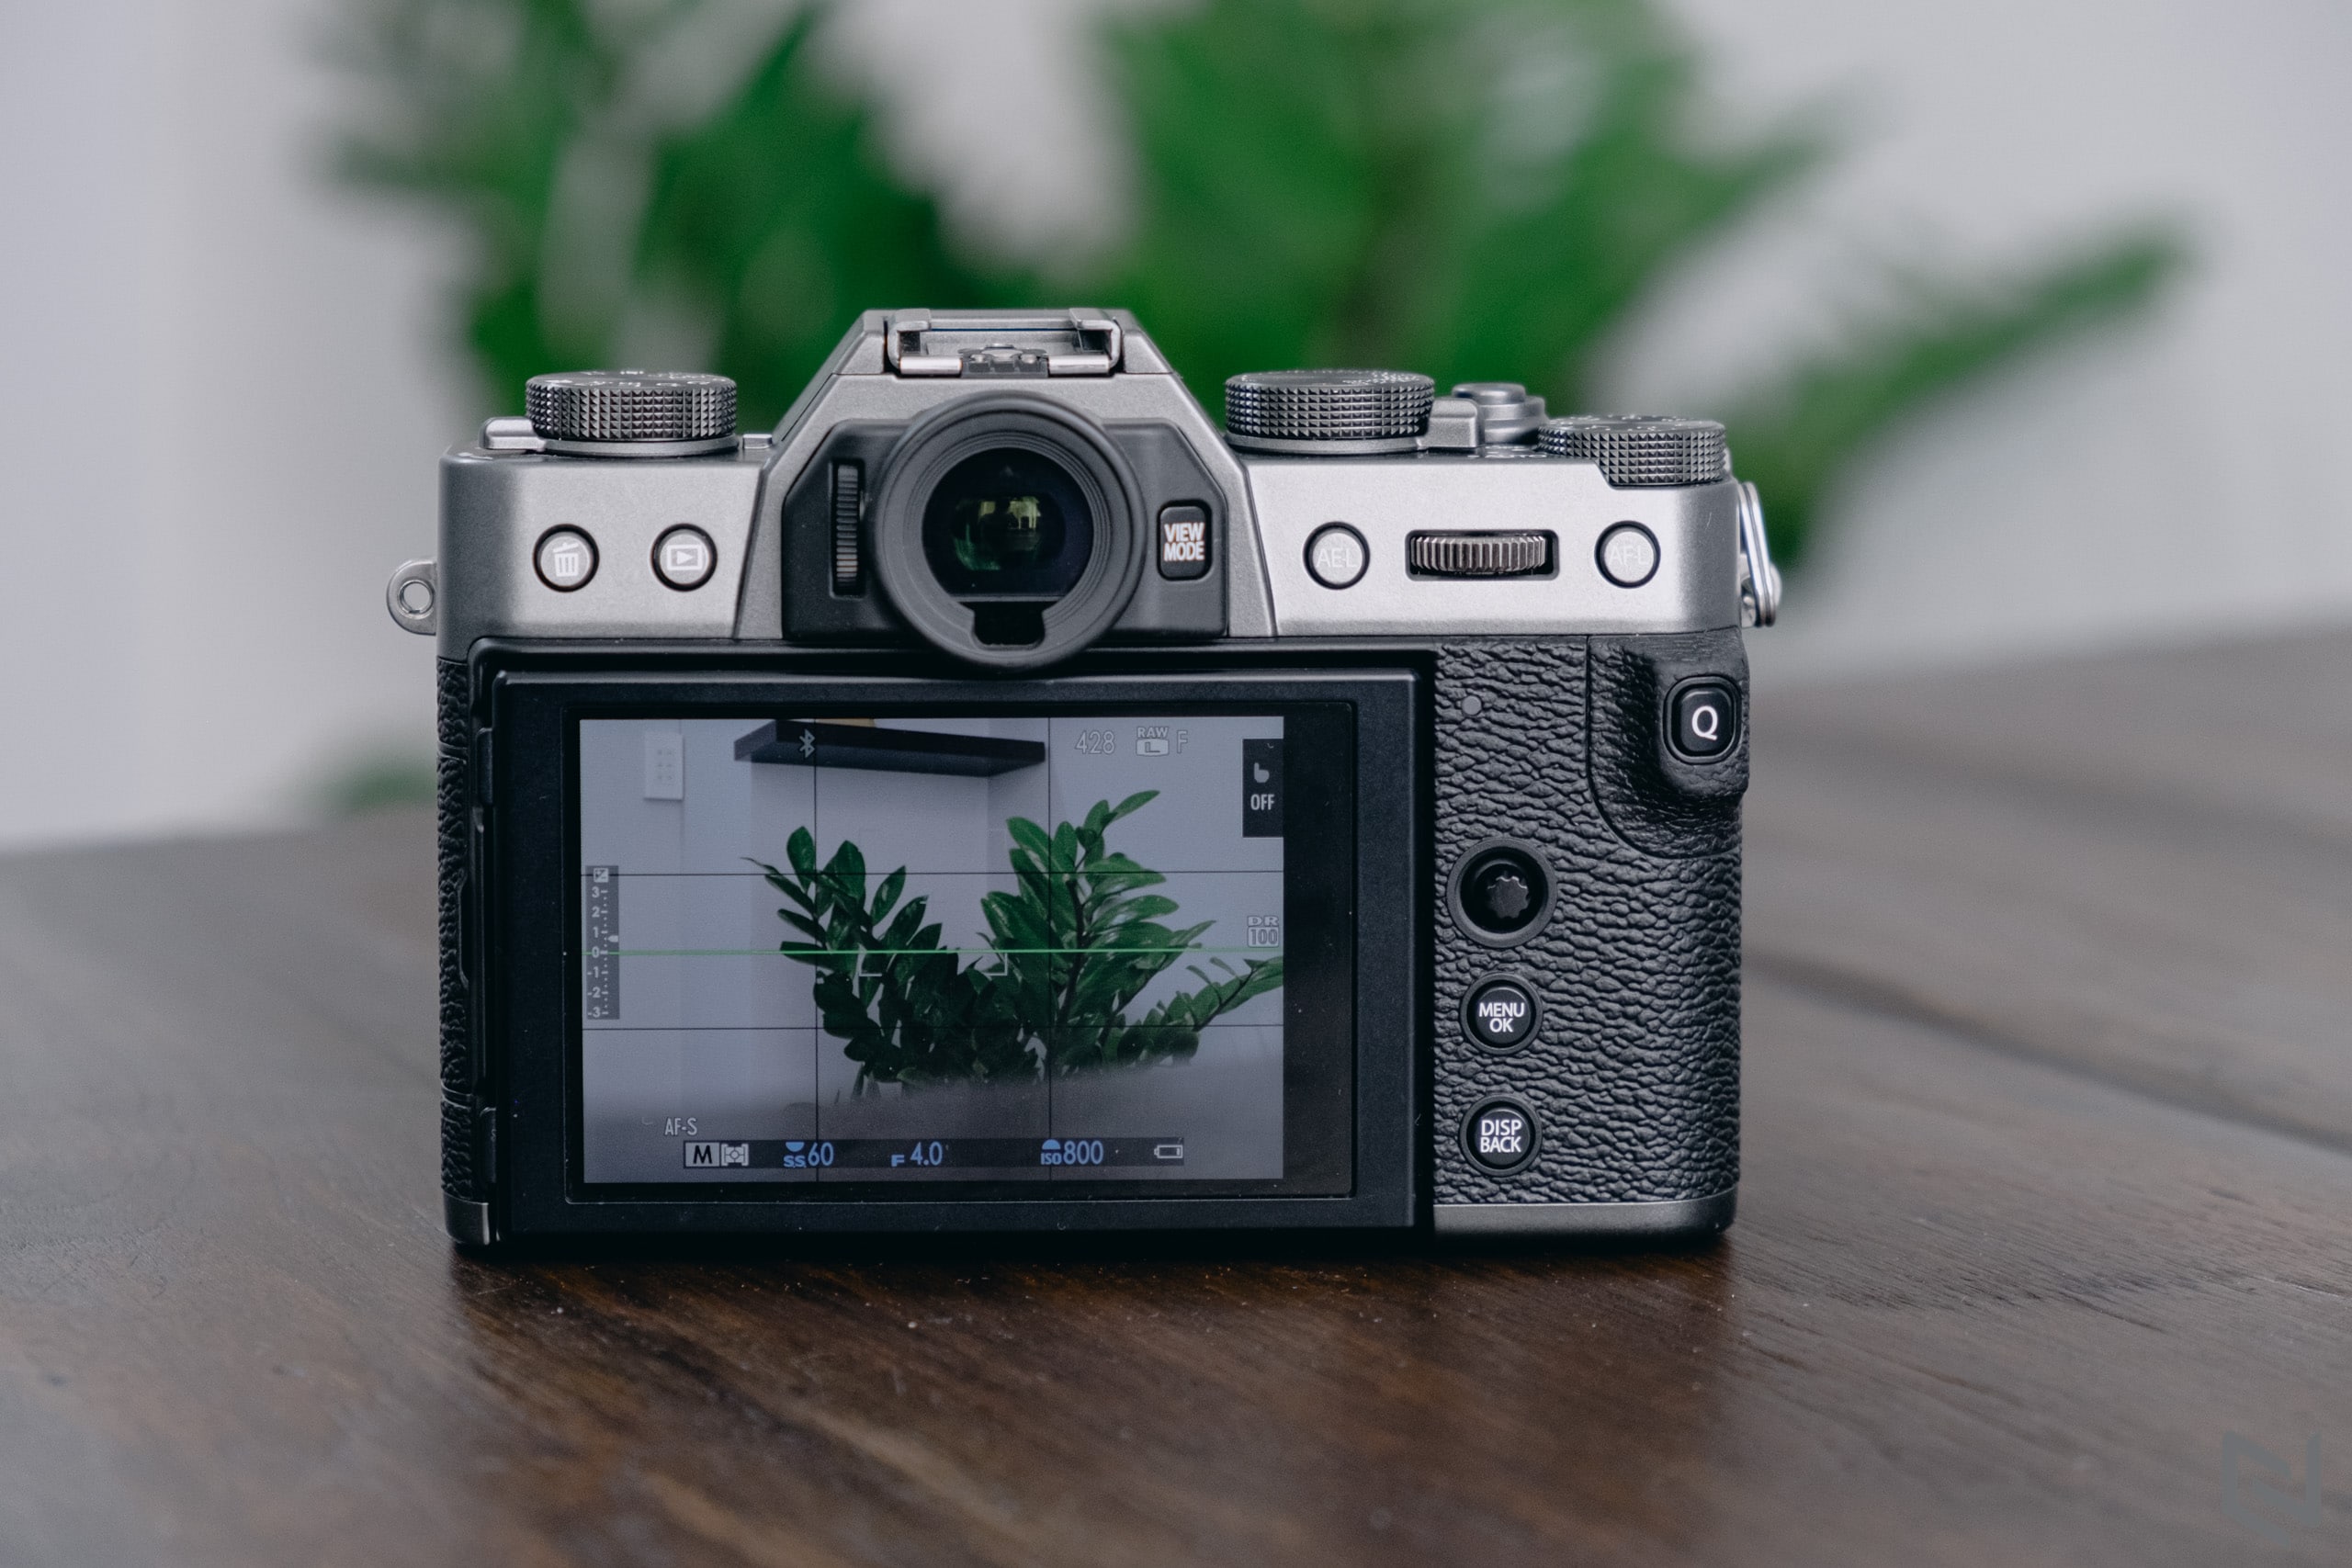 Sỡ hữu combo máy ảnh Fujifilm X-T30 và XF 35mm F1.4 hiện đang được giảm giá 5 triệu tại WinWinStore